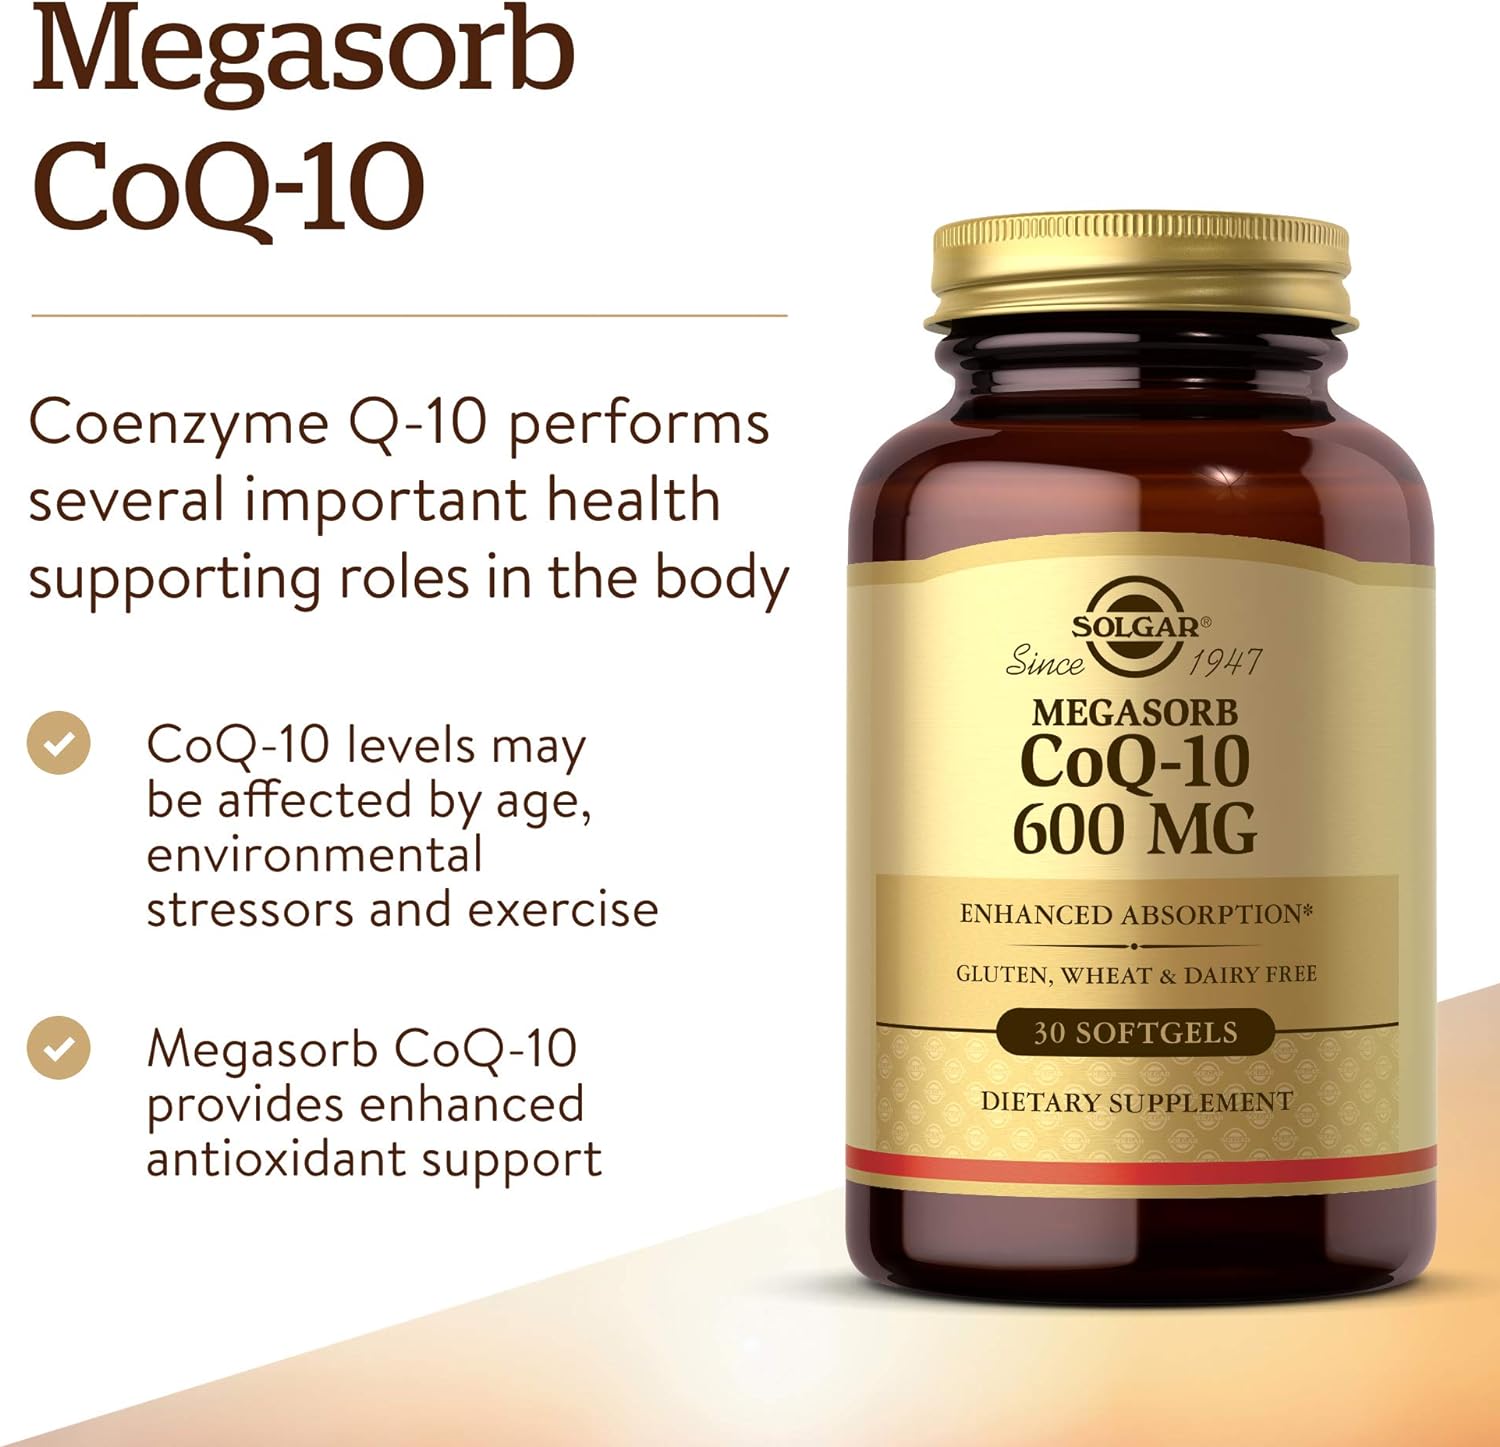 Solgar Megasorb CoQ-10 600 mg, 30 Softgels - Promotes Heart & Nervous 